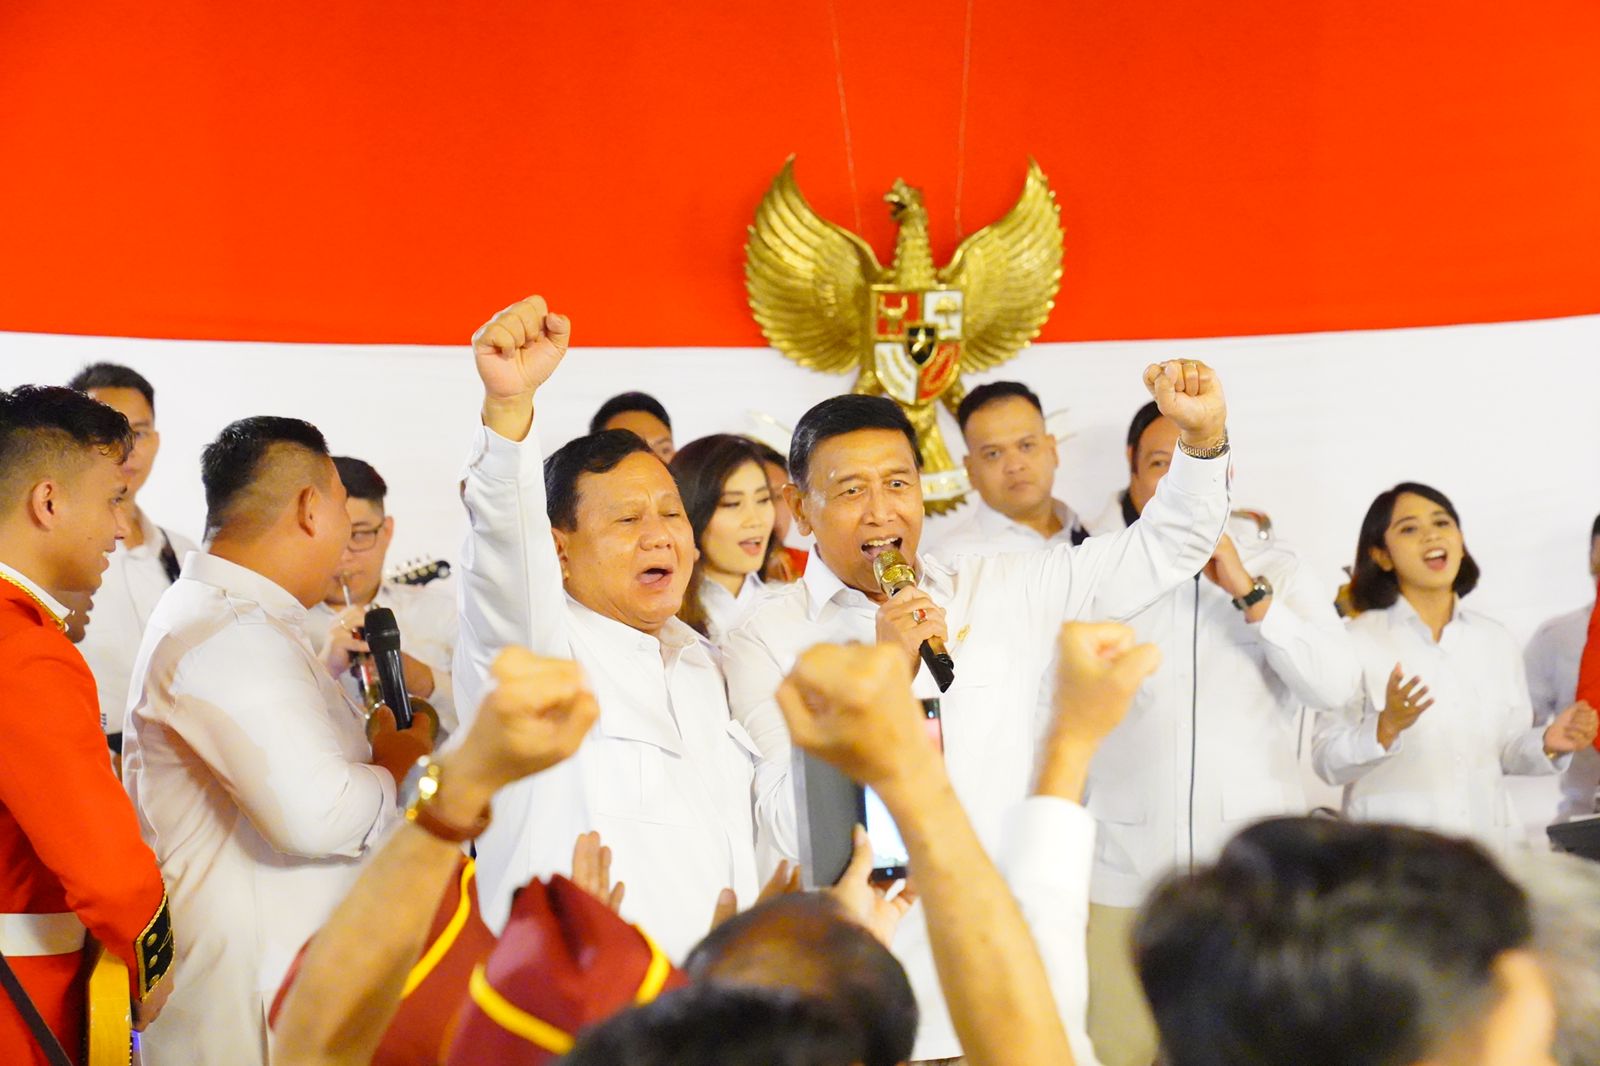 Wiranto Utarakan Isi Hati Dukung Prabowo dan Gerindra untuk Perjuangan Politik yang Sehat